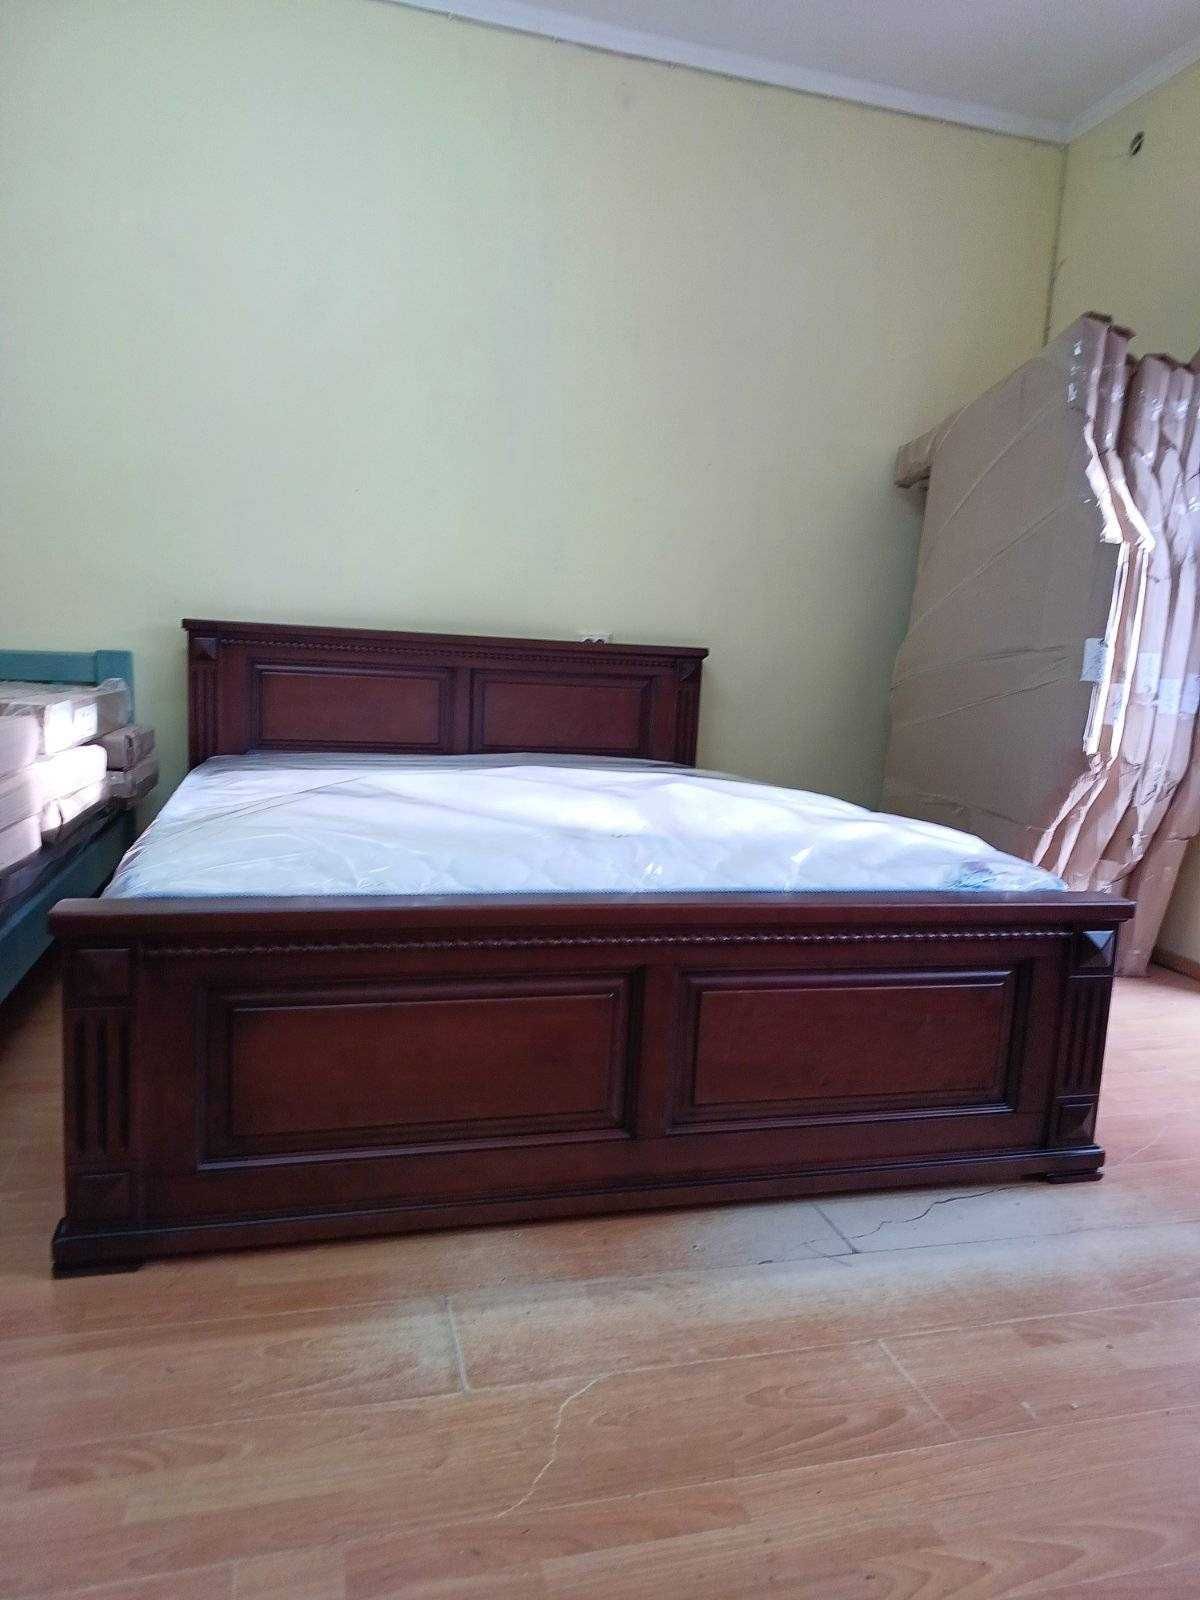 Ліжко двохспальне з масива дерева 16700 грн.Внаявності на магазині